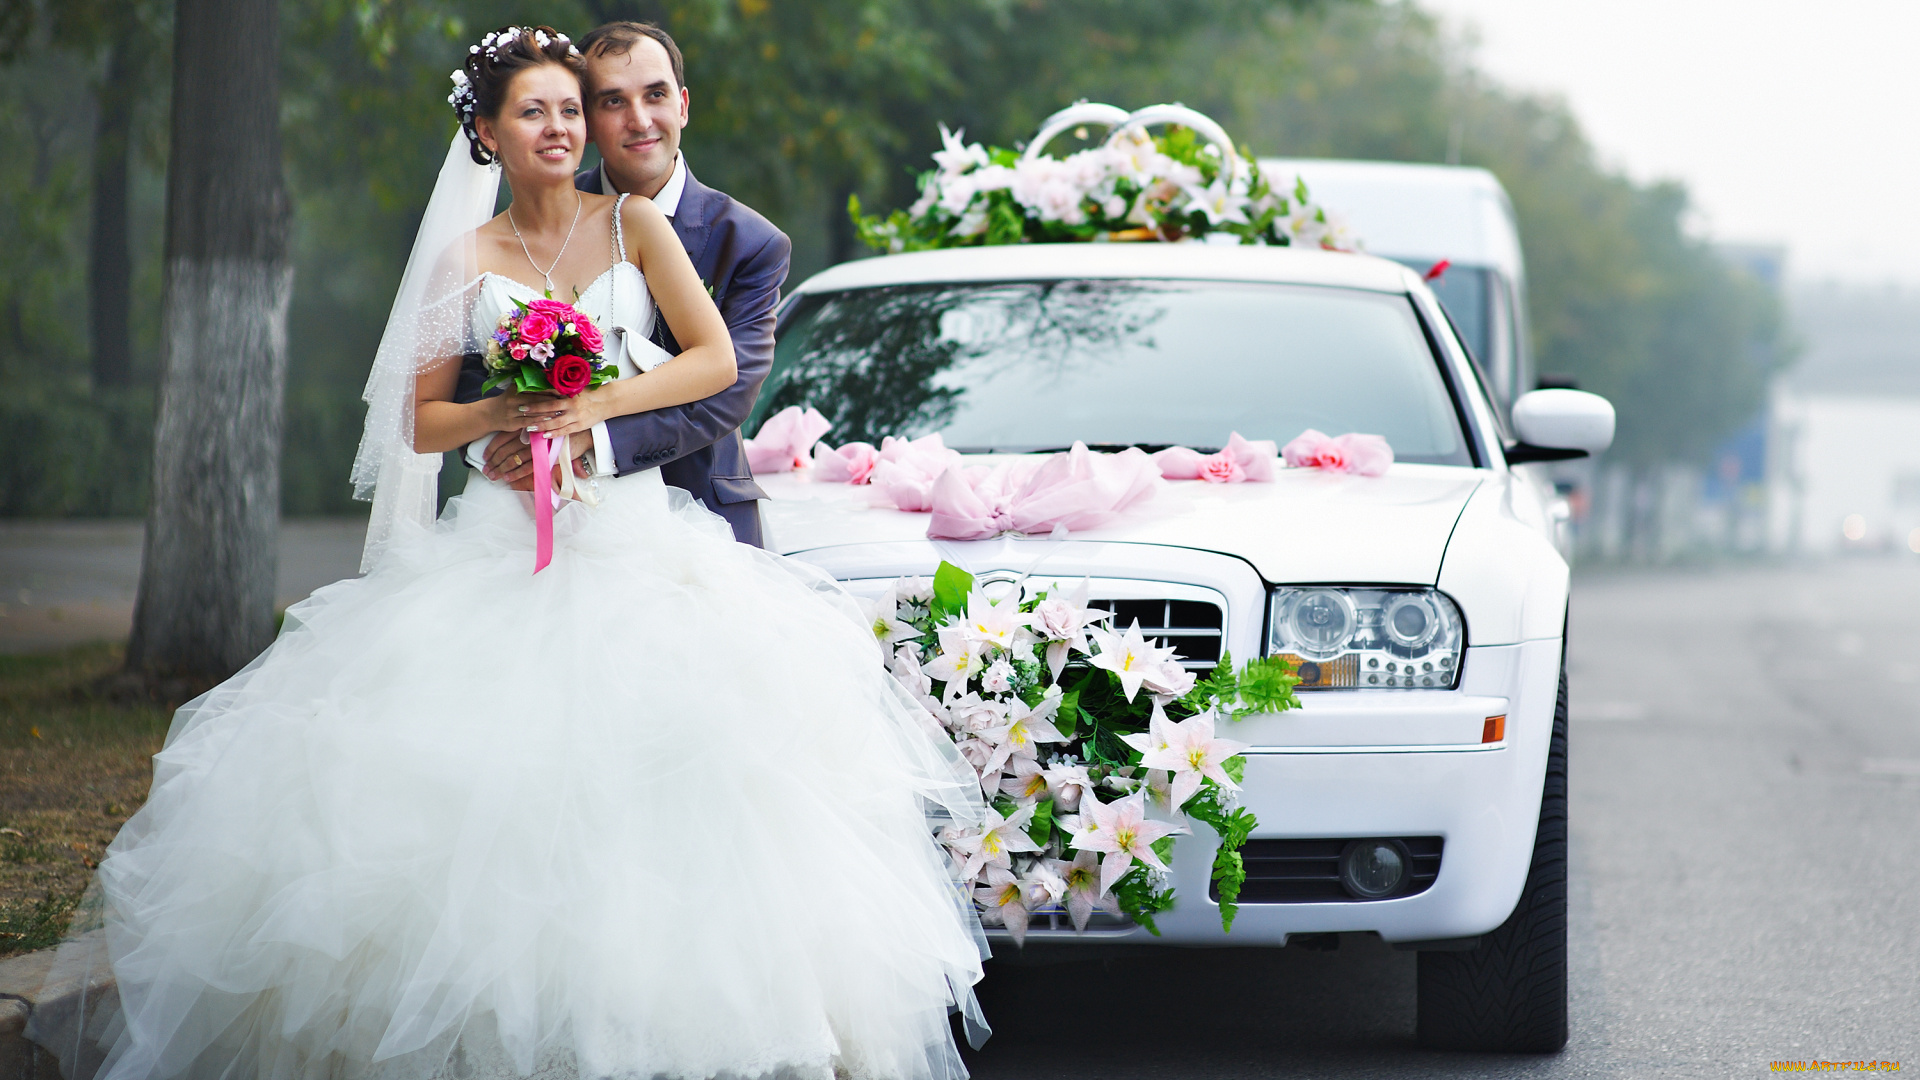 разное, мужчина, женщина, lovers, happy, bouquet, букет, украшения, платье, wedding, свадьба, bride, groom, автомобиль, невеста, жених